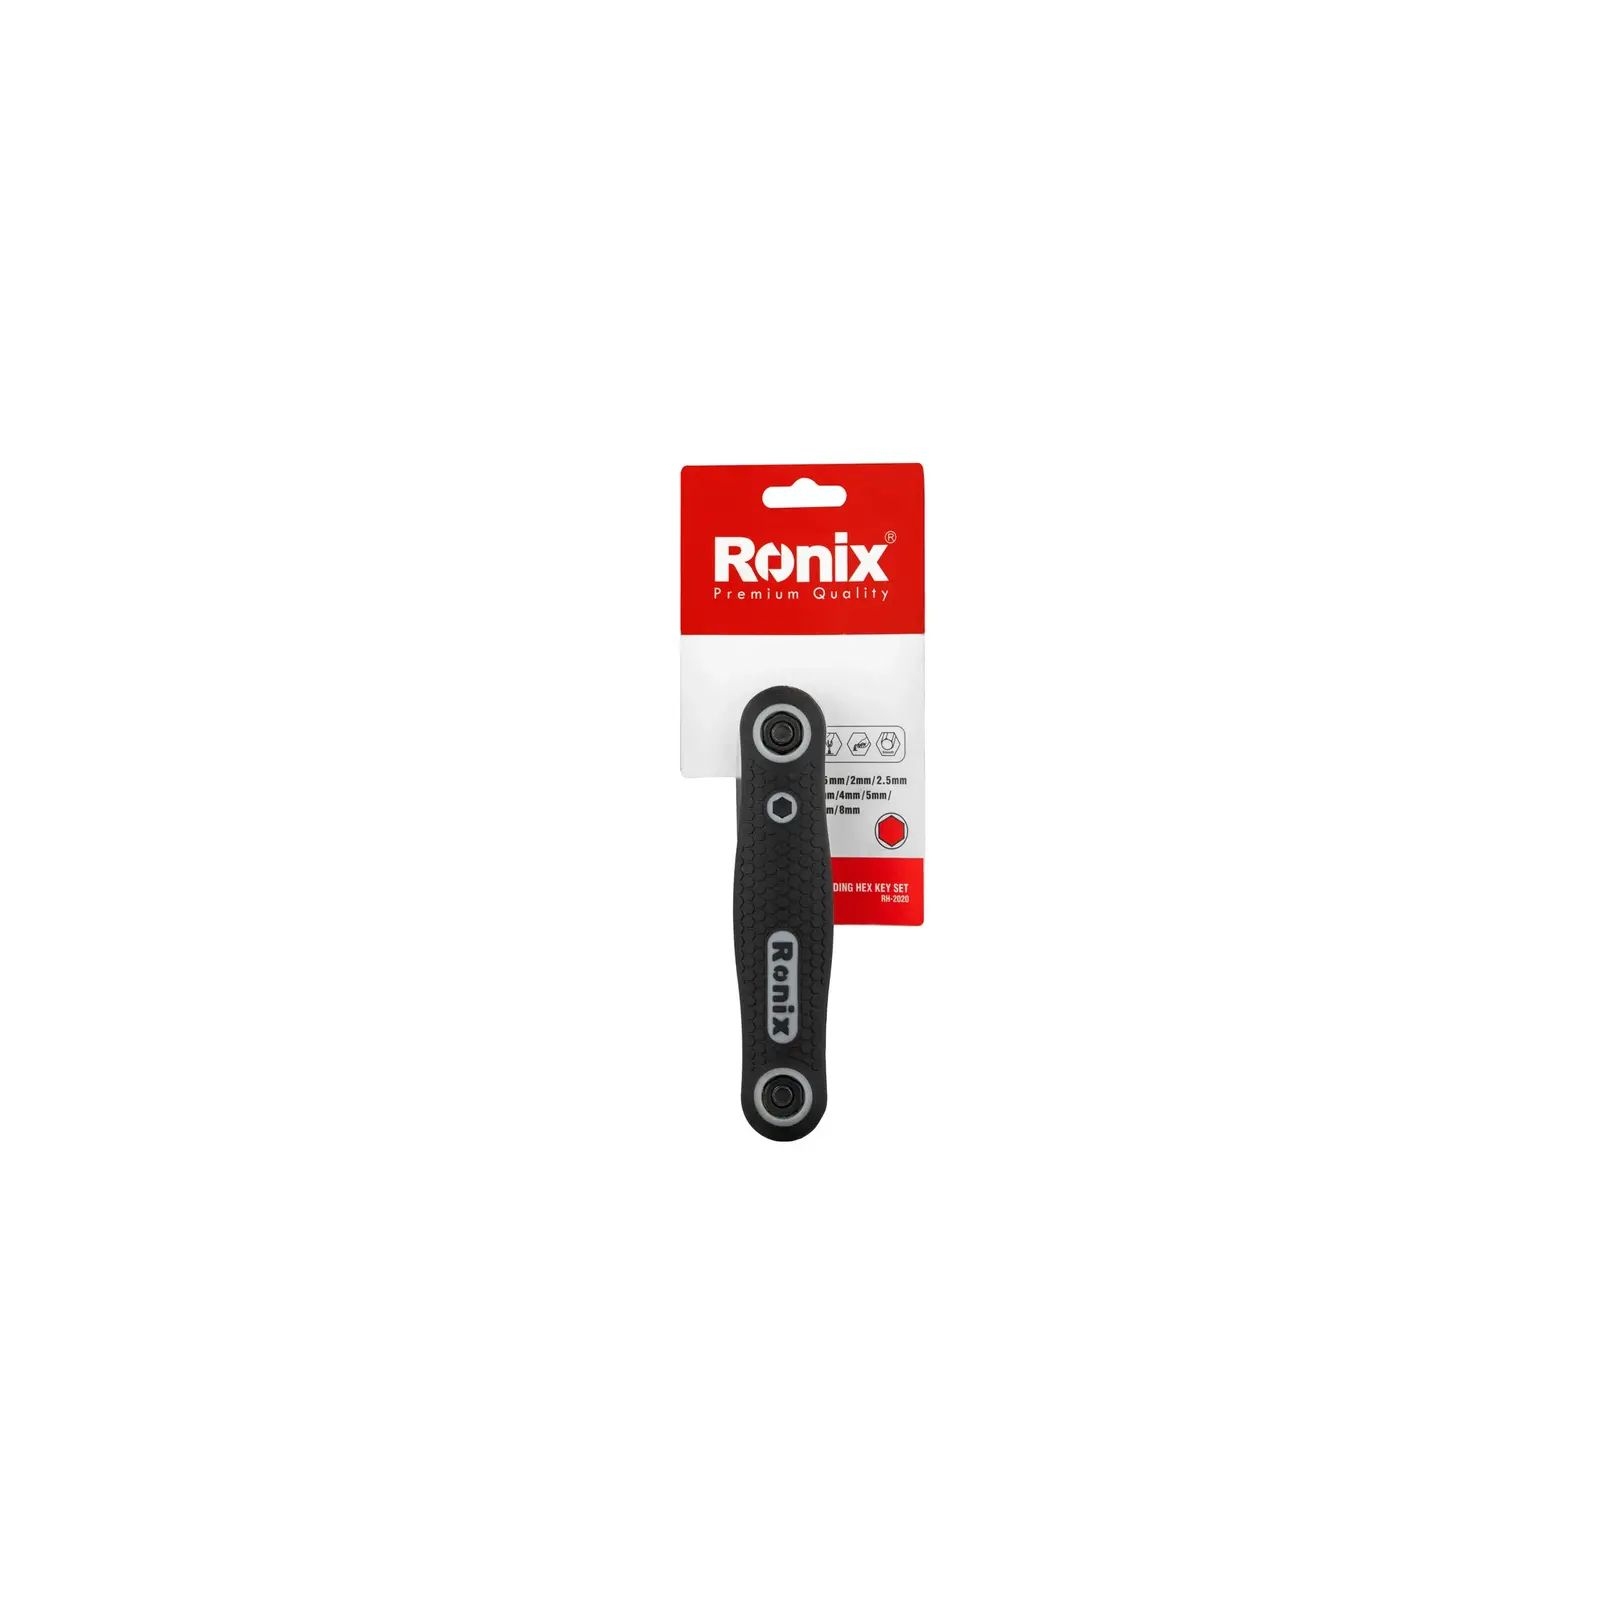 Ключ Ronix складной шестигранный (RH-2020) изображение 6